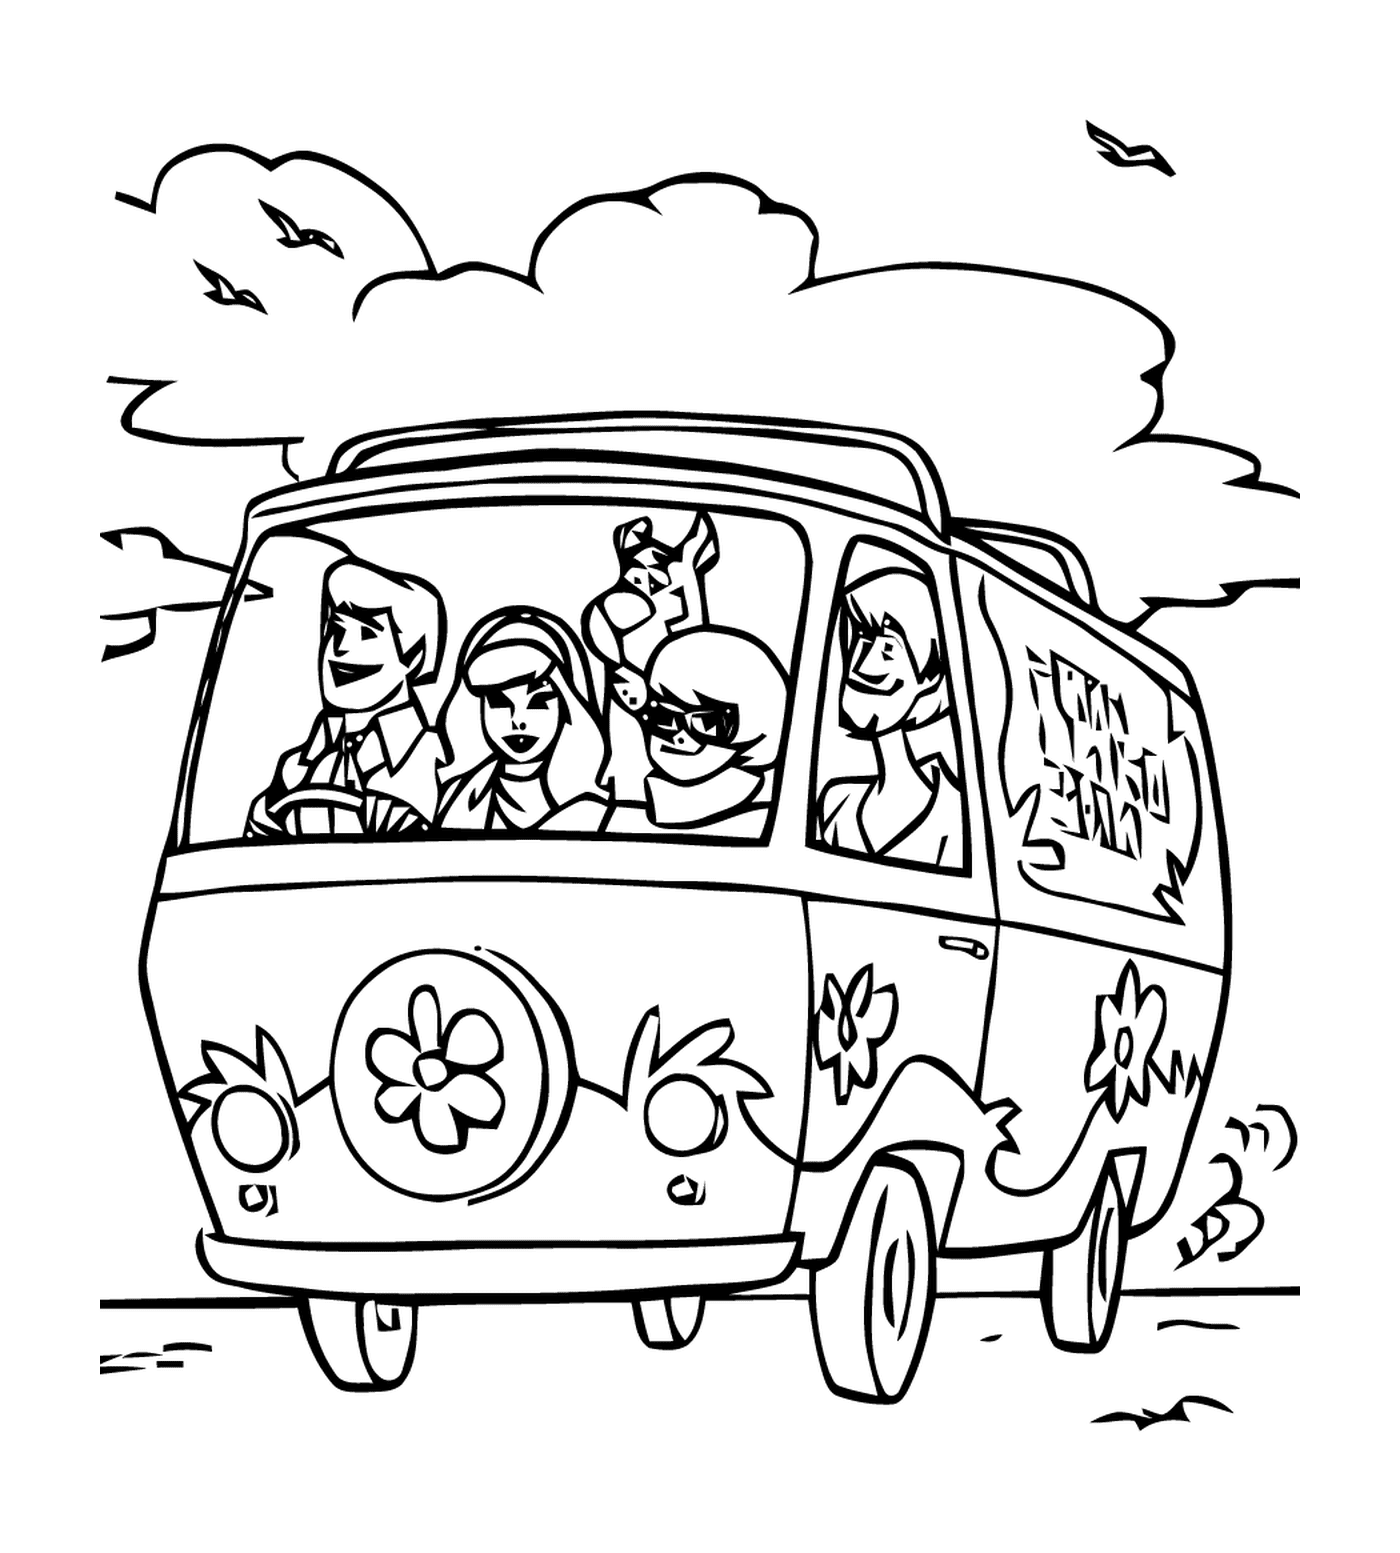  सड़क पर एक कार में लोगों का एक समूह 